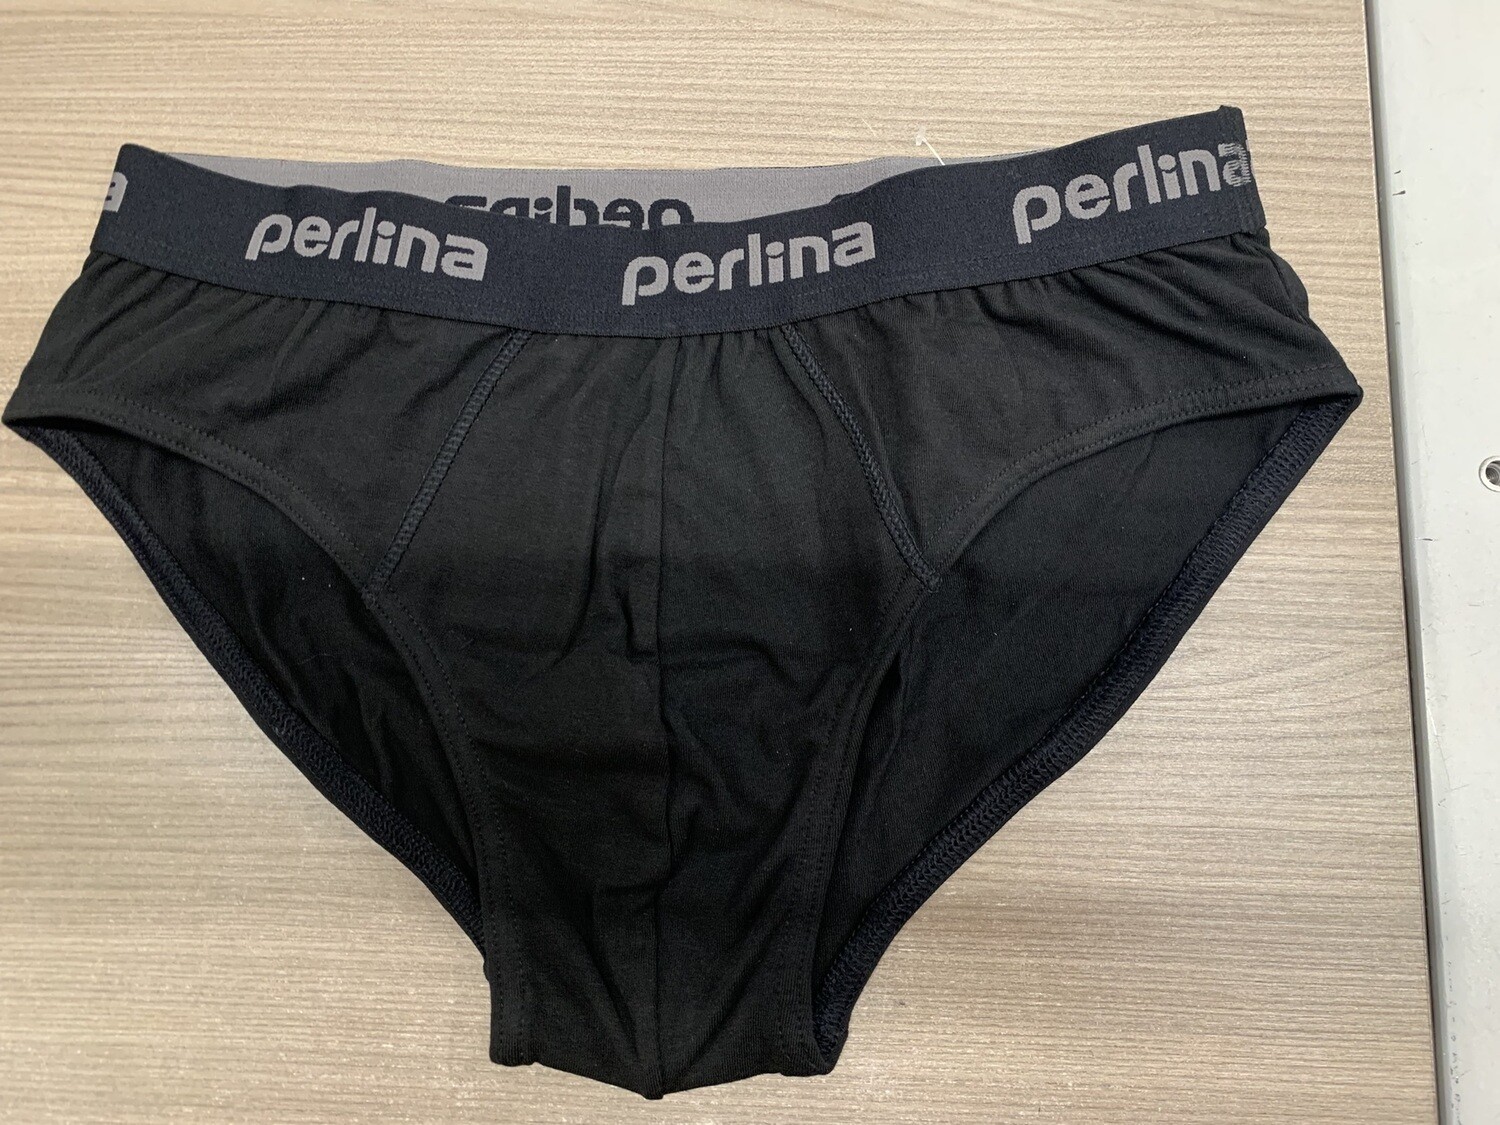 Perlina Heren onderbroek: Basis model, zwart of wit